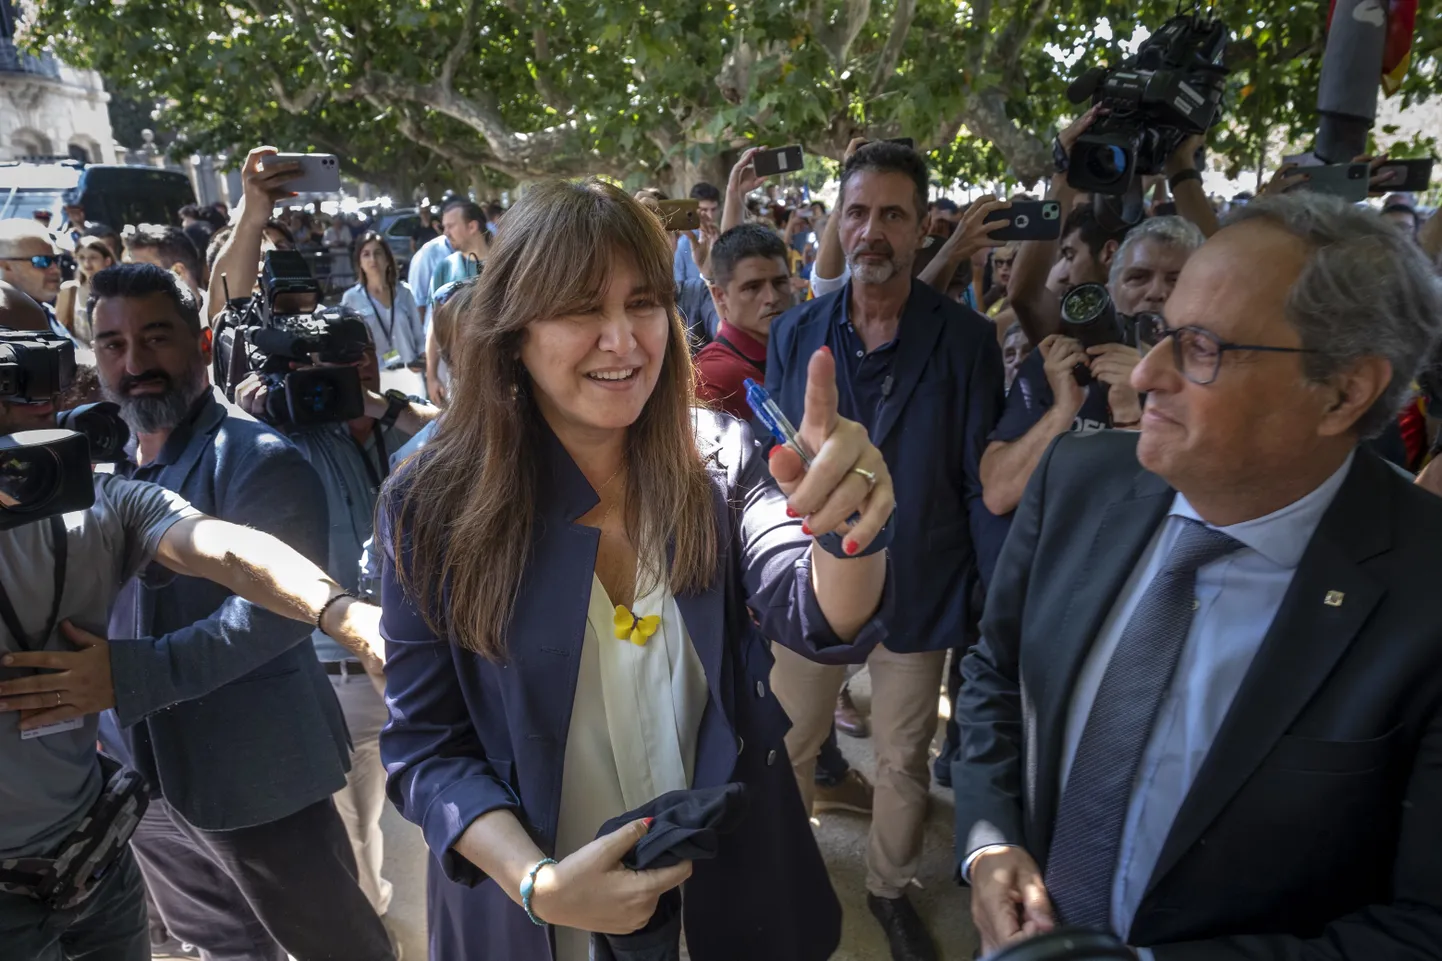 Kataloonia parlamendi juht Laura Borras (keskel).